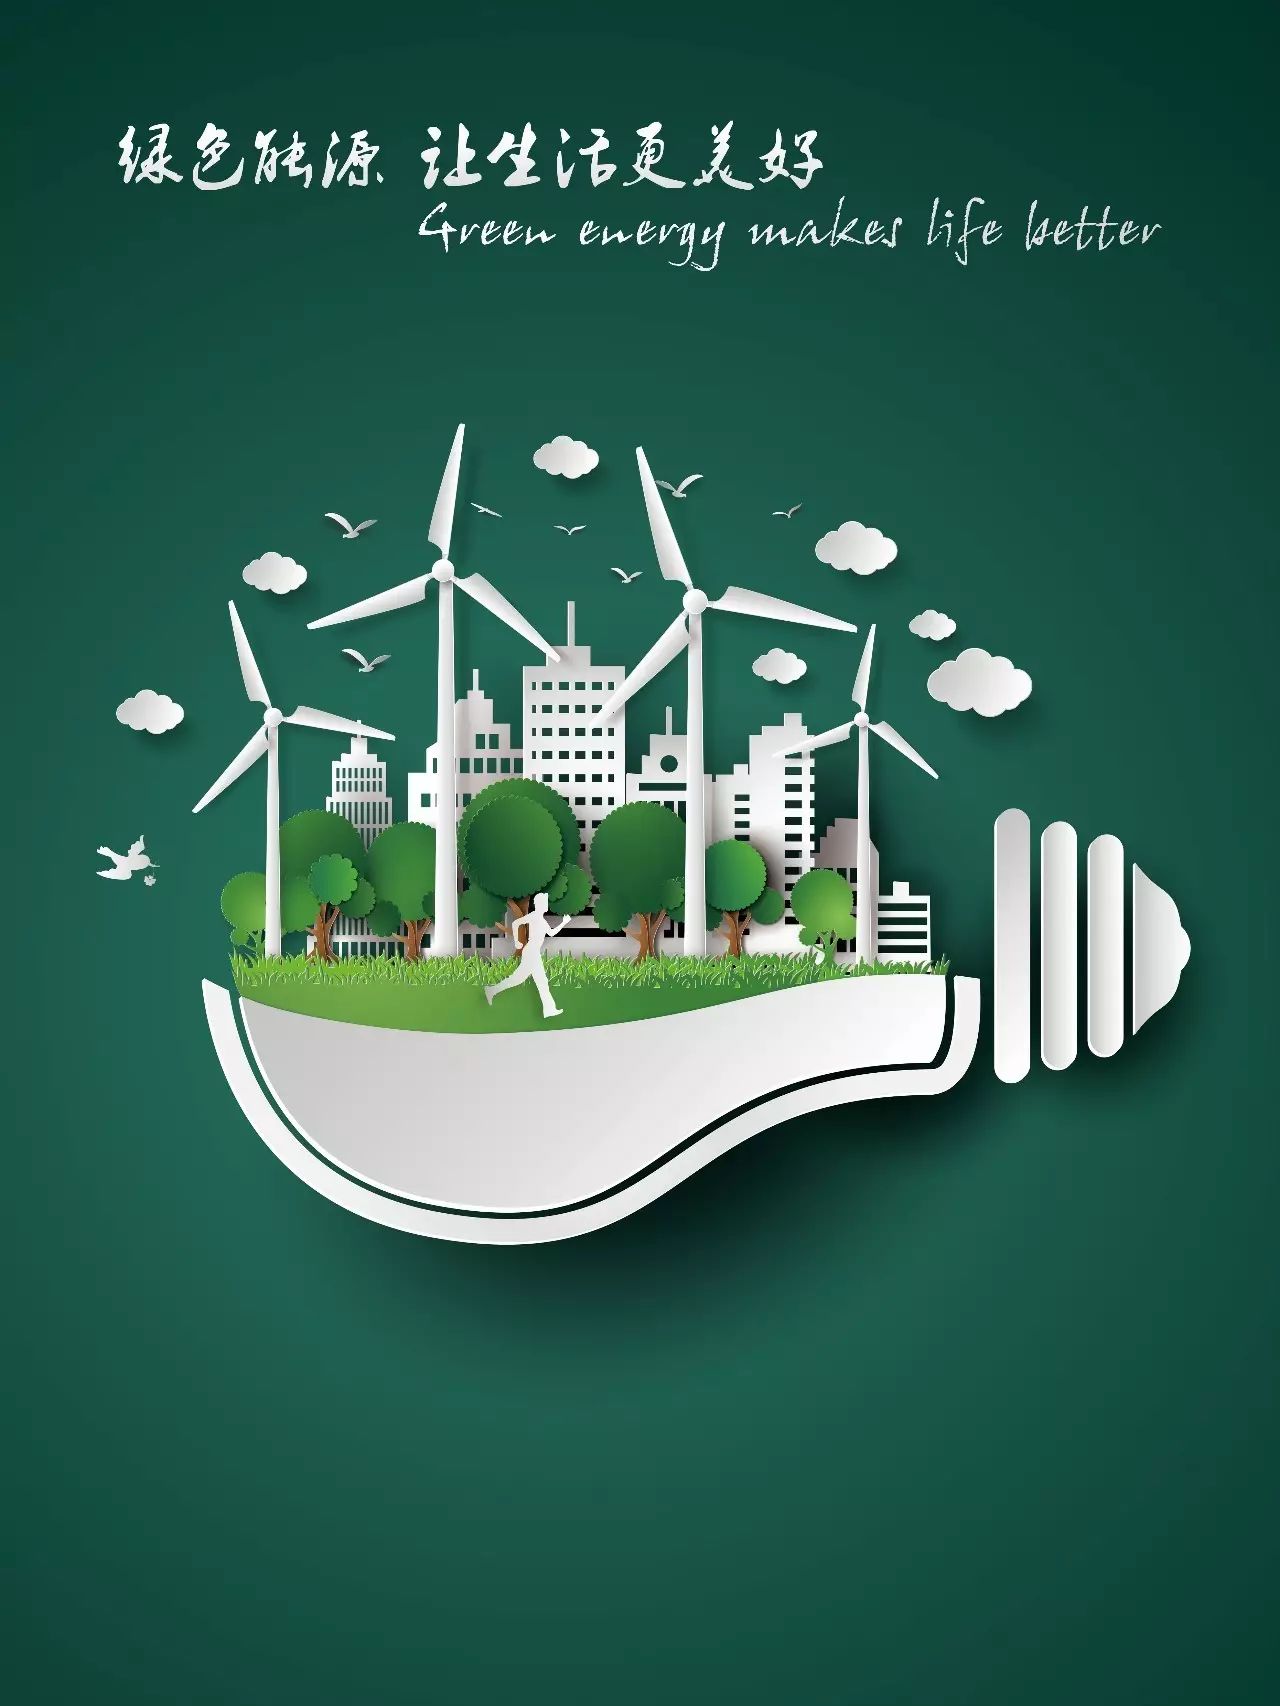 ⑤《绿色能源让生活更美好》 众所周知,风电,太阳能发电是最清洁的